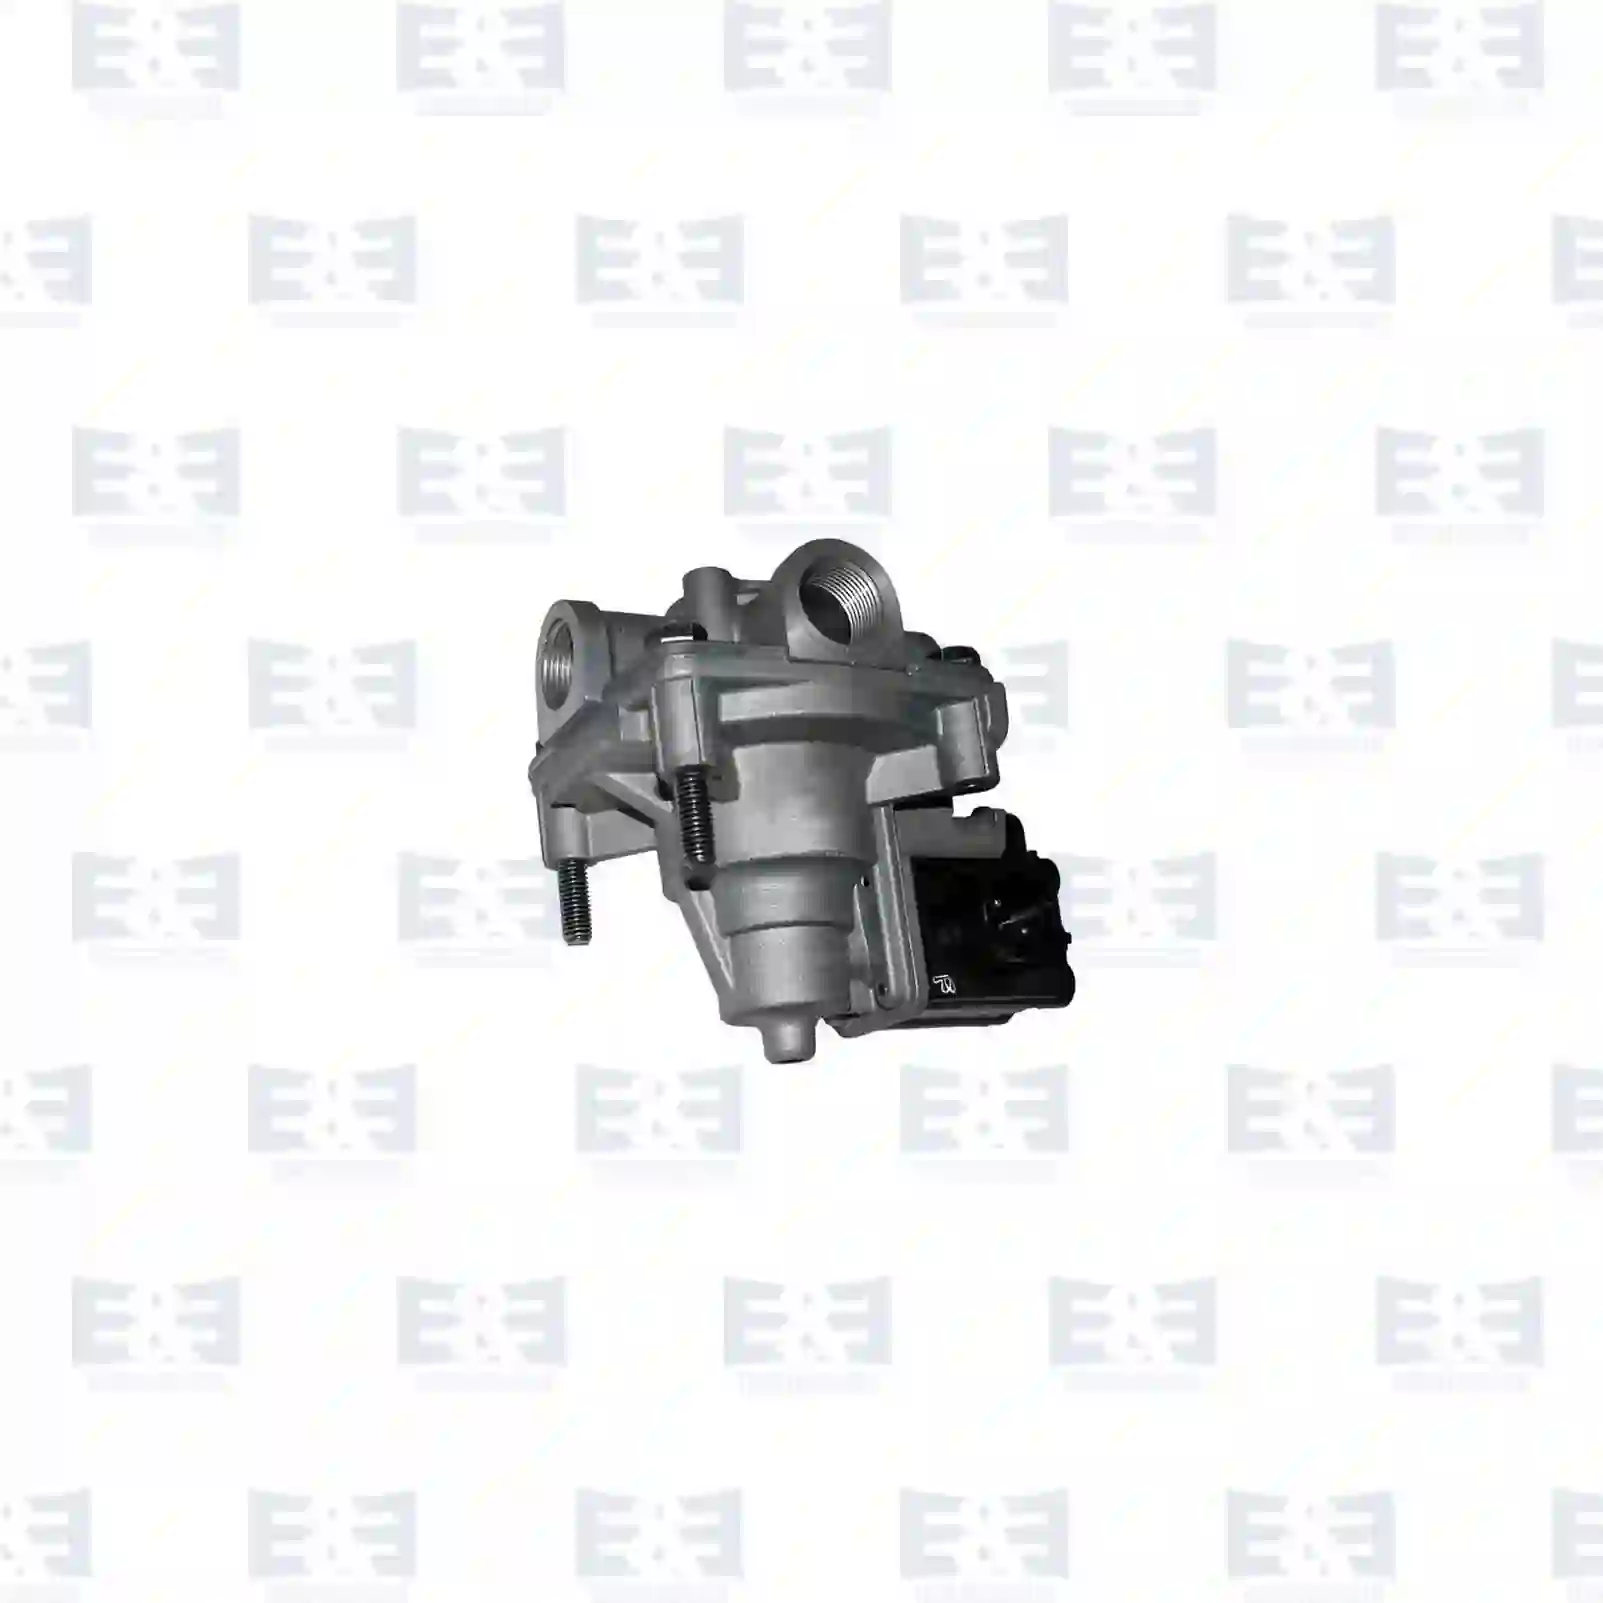 Pressure limiting valve, 2E2295545, 1405932, , , , ||  2E2295545 E&E Truck Spare Parts | Truck Spare Parts, Auotomotive Spare Parts Pressure limiting valve, 2E2295545, 1405932, , , , ||  2E2295545 E&E Truck Spare Parts | Truck Spare Parts, Auotomotive Spare Parts